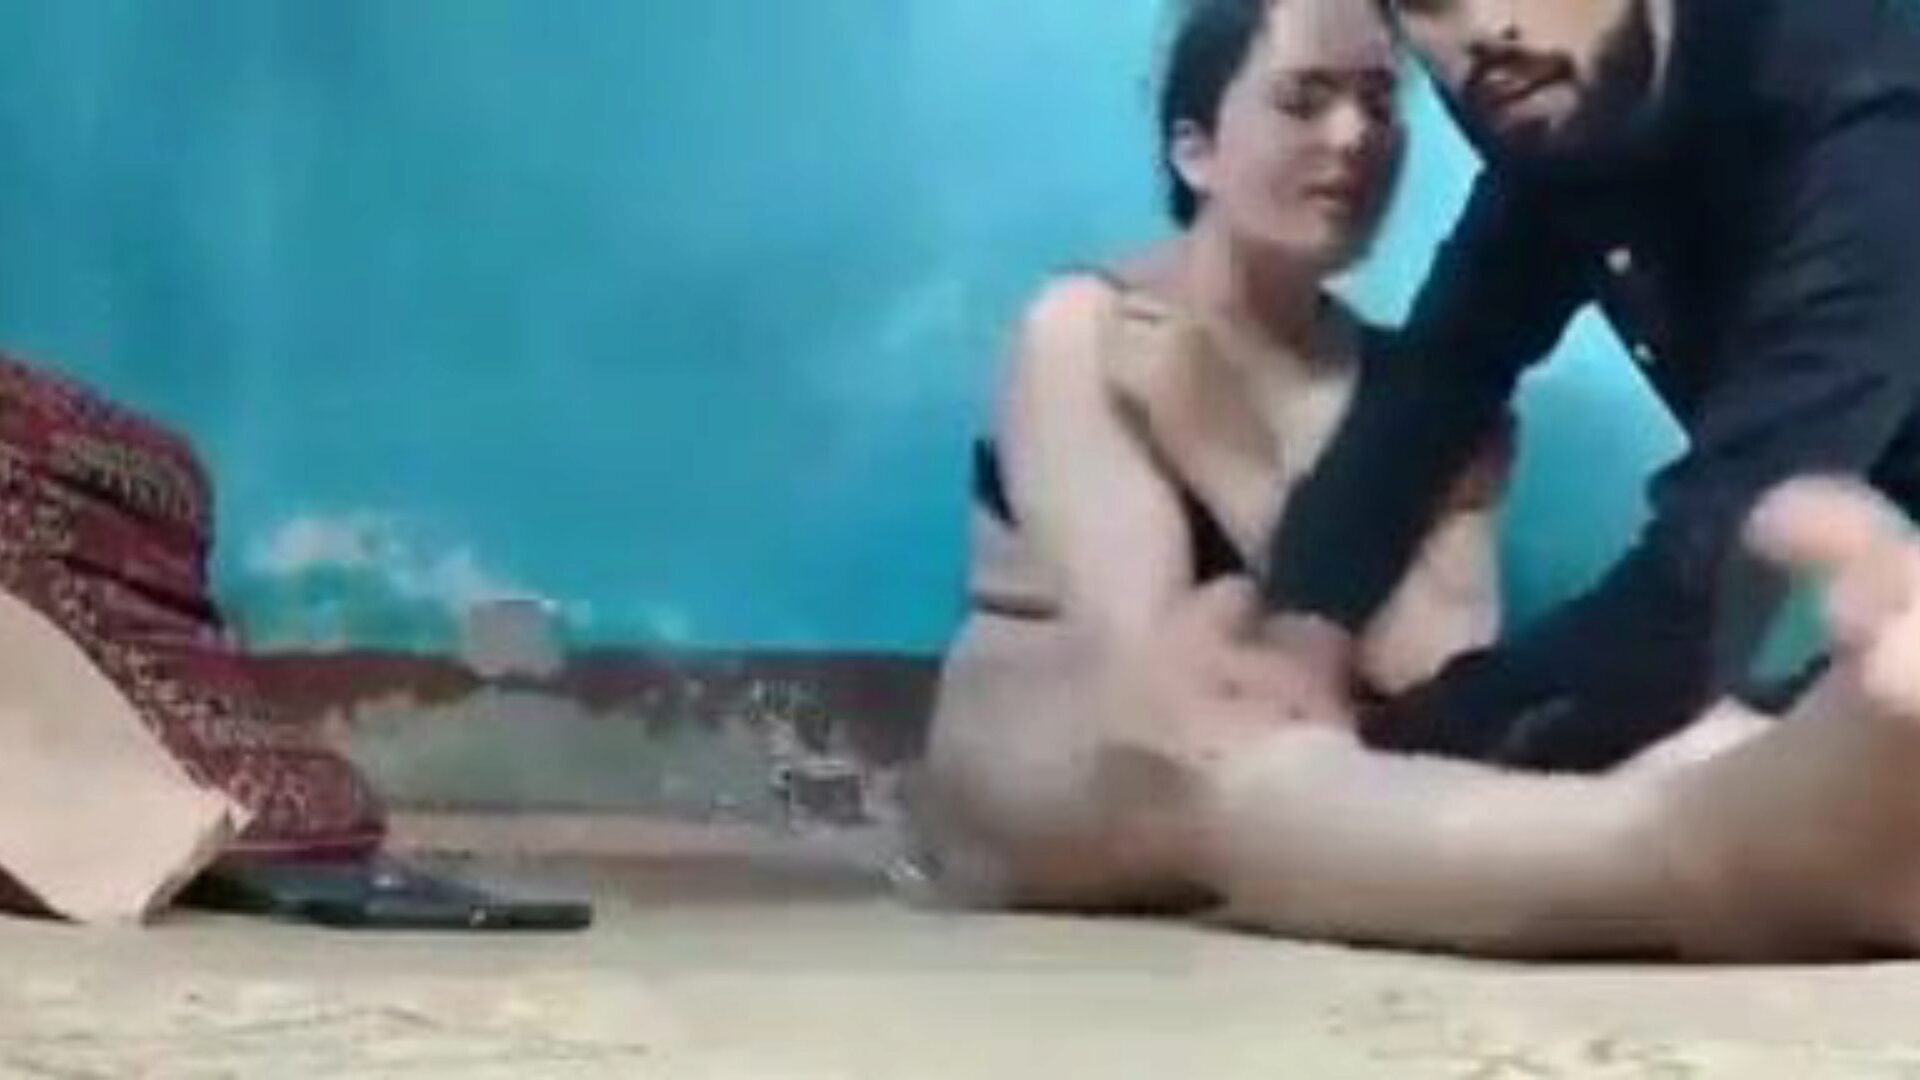 kashmiri sexvideo: gratis indisk pornovideo 69 - xhamster se kashmiri sexvideo tube bang-out video gratis på xhamster, med den mest sexy samlingen av indiske xxx gratis sex- og historiepornosepisodescener